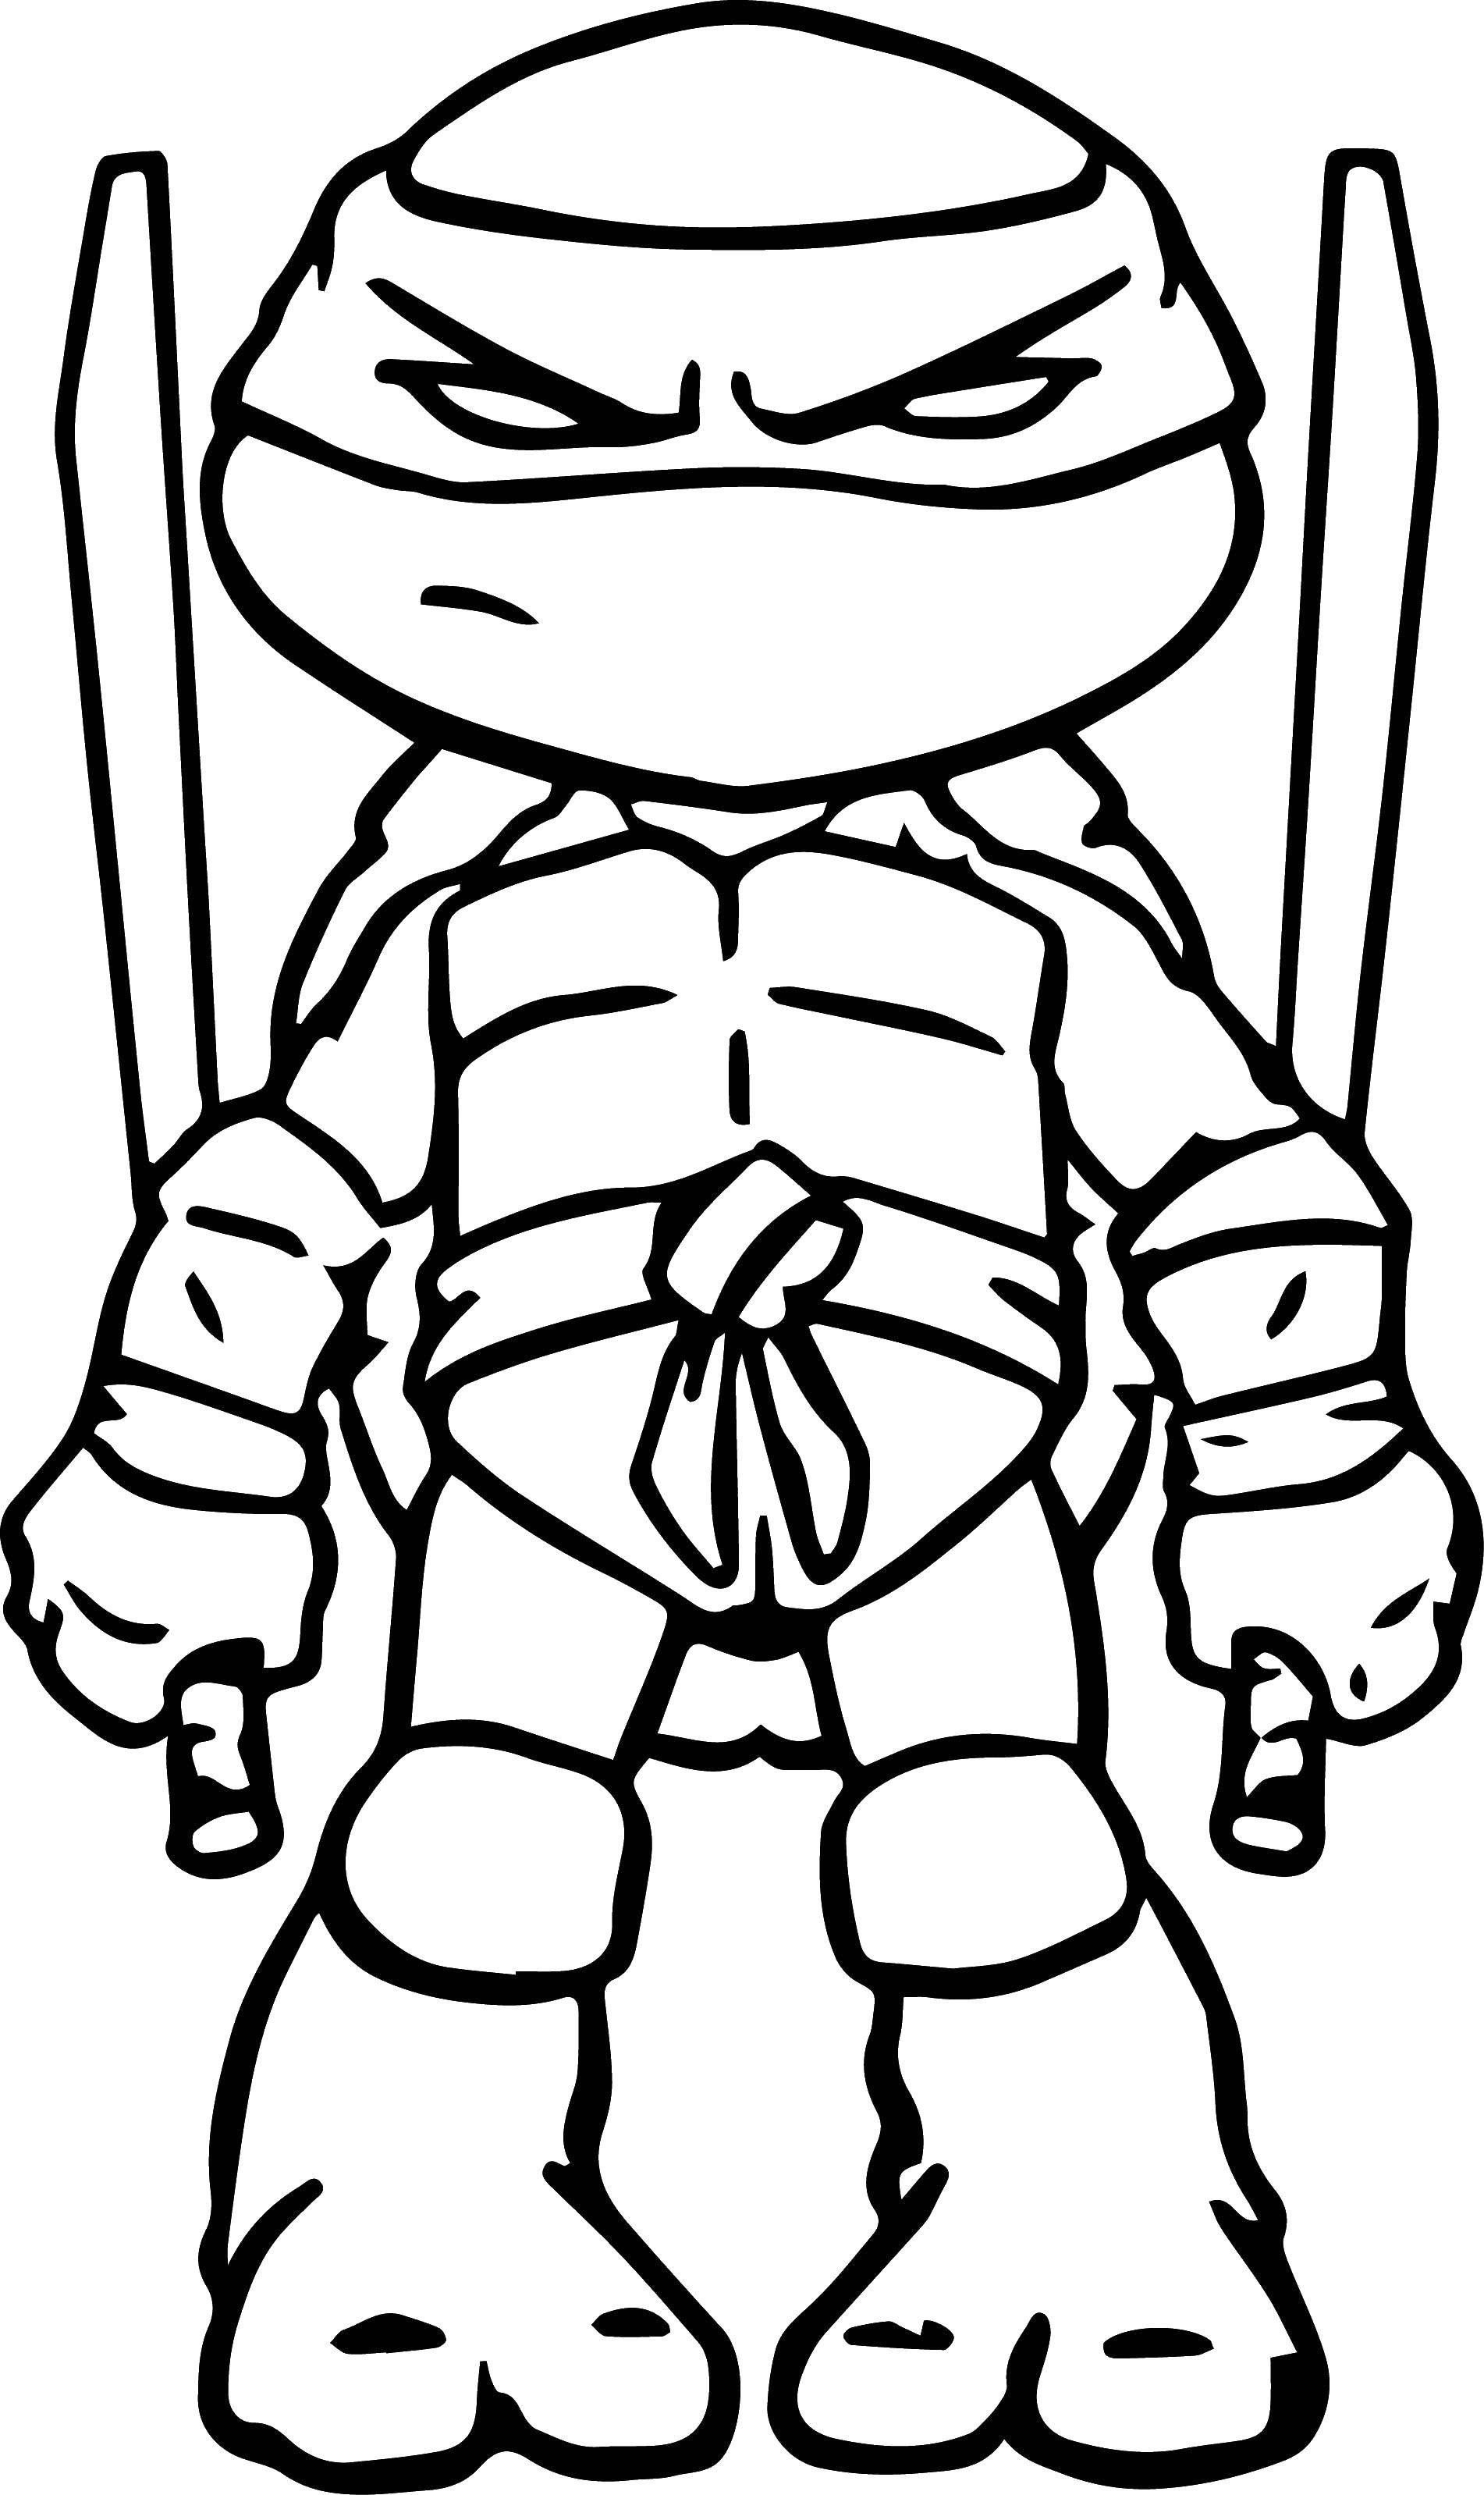 Coloring Leonardo swords. Category ninja . Tags:  Comics, Teenage Mutant Ninja Turtles.